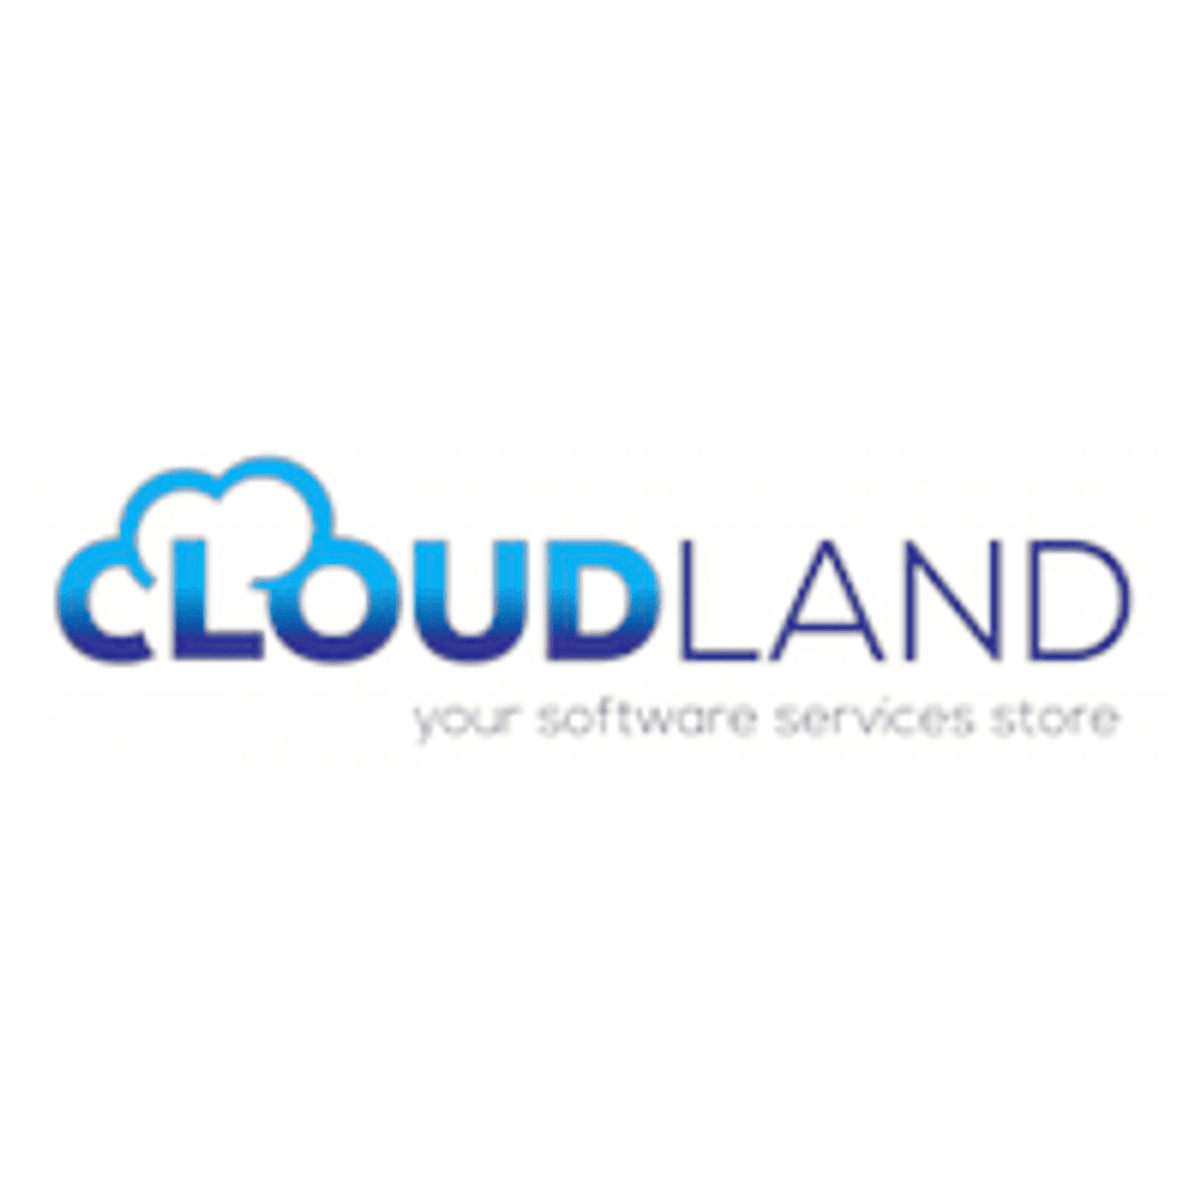 CloudLand gaat partnership aan met Wasabi Hot Cloud Storage image